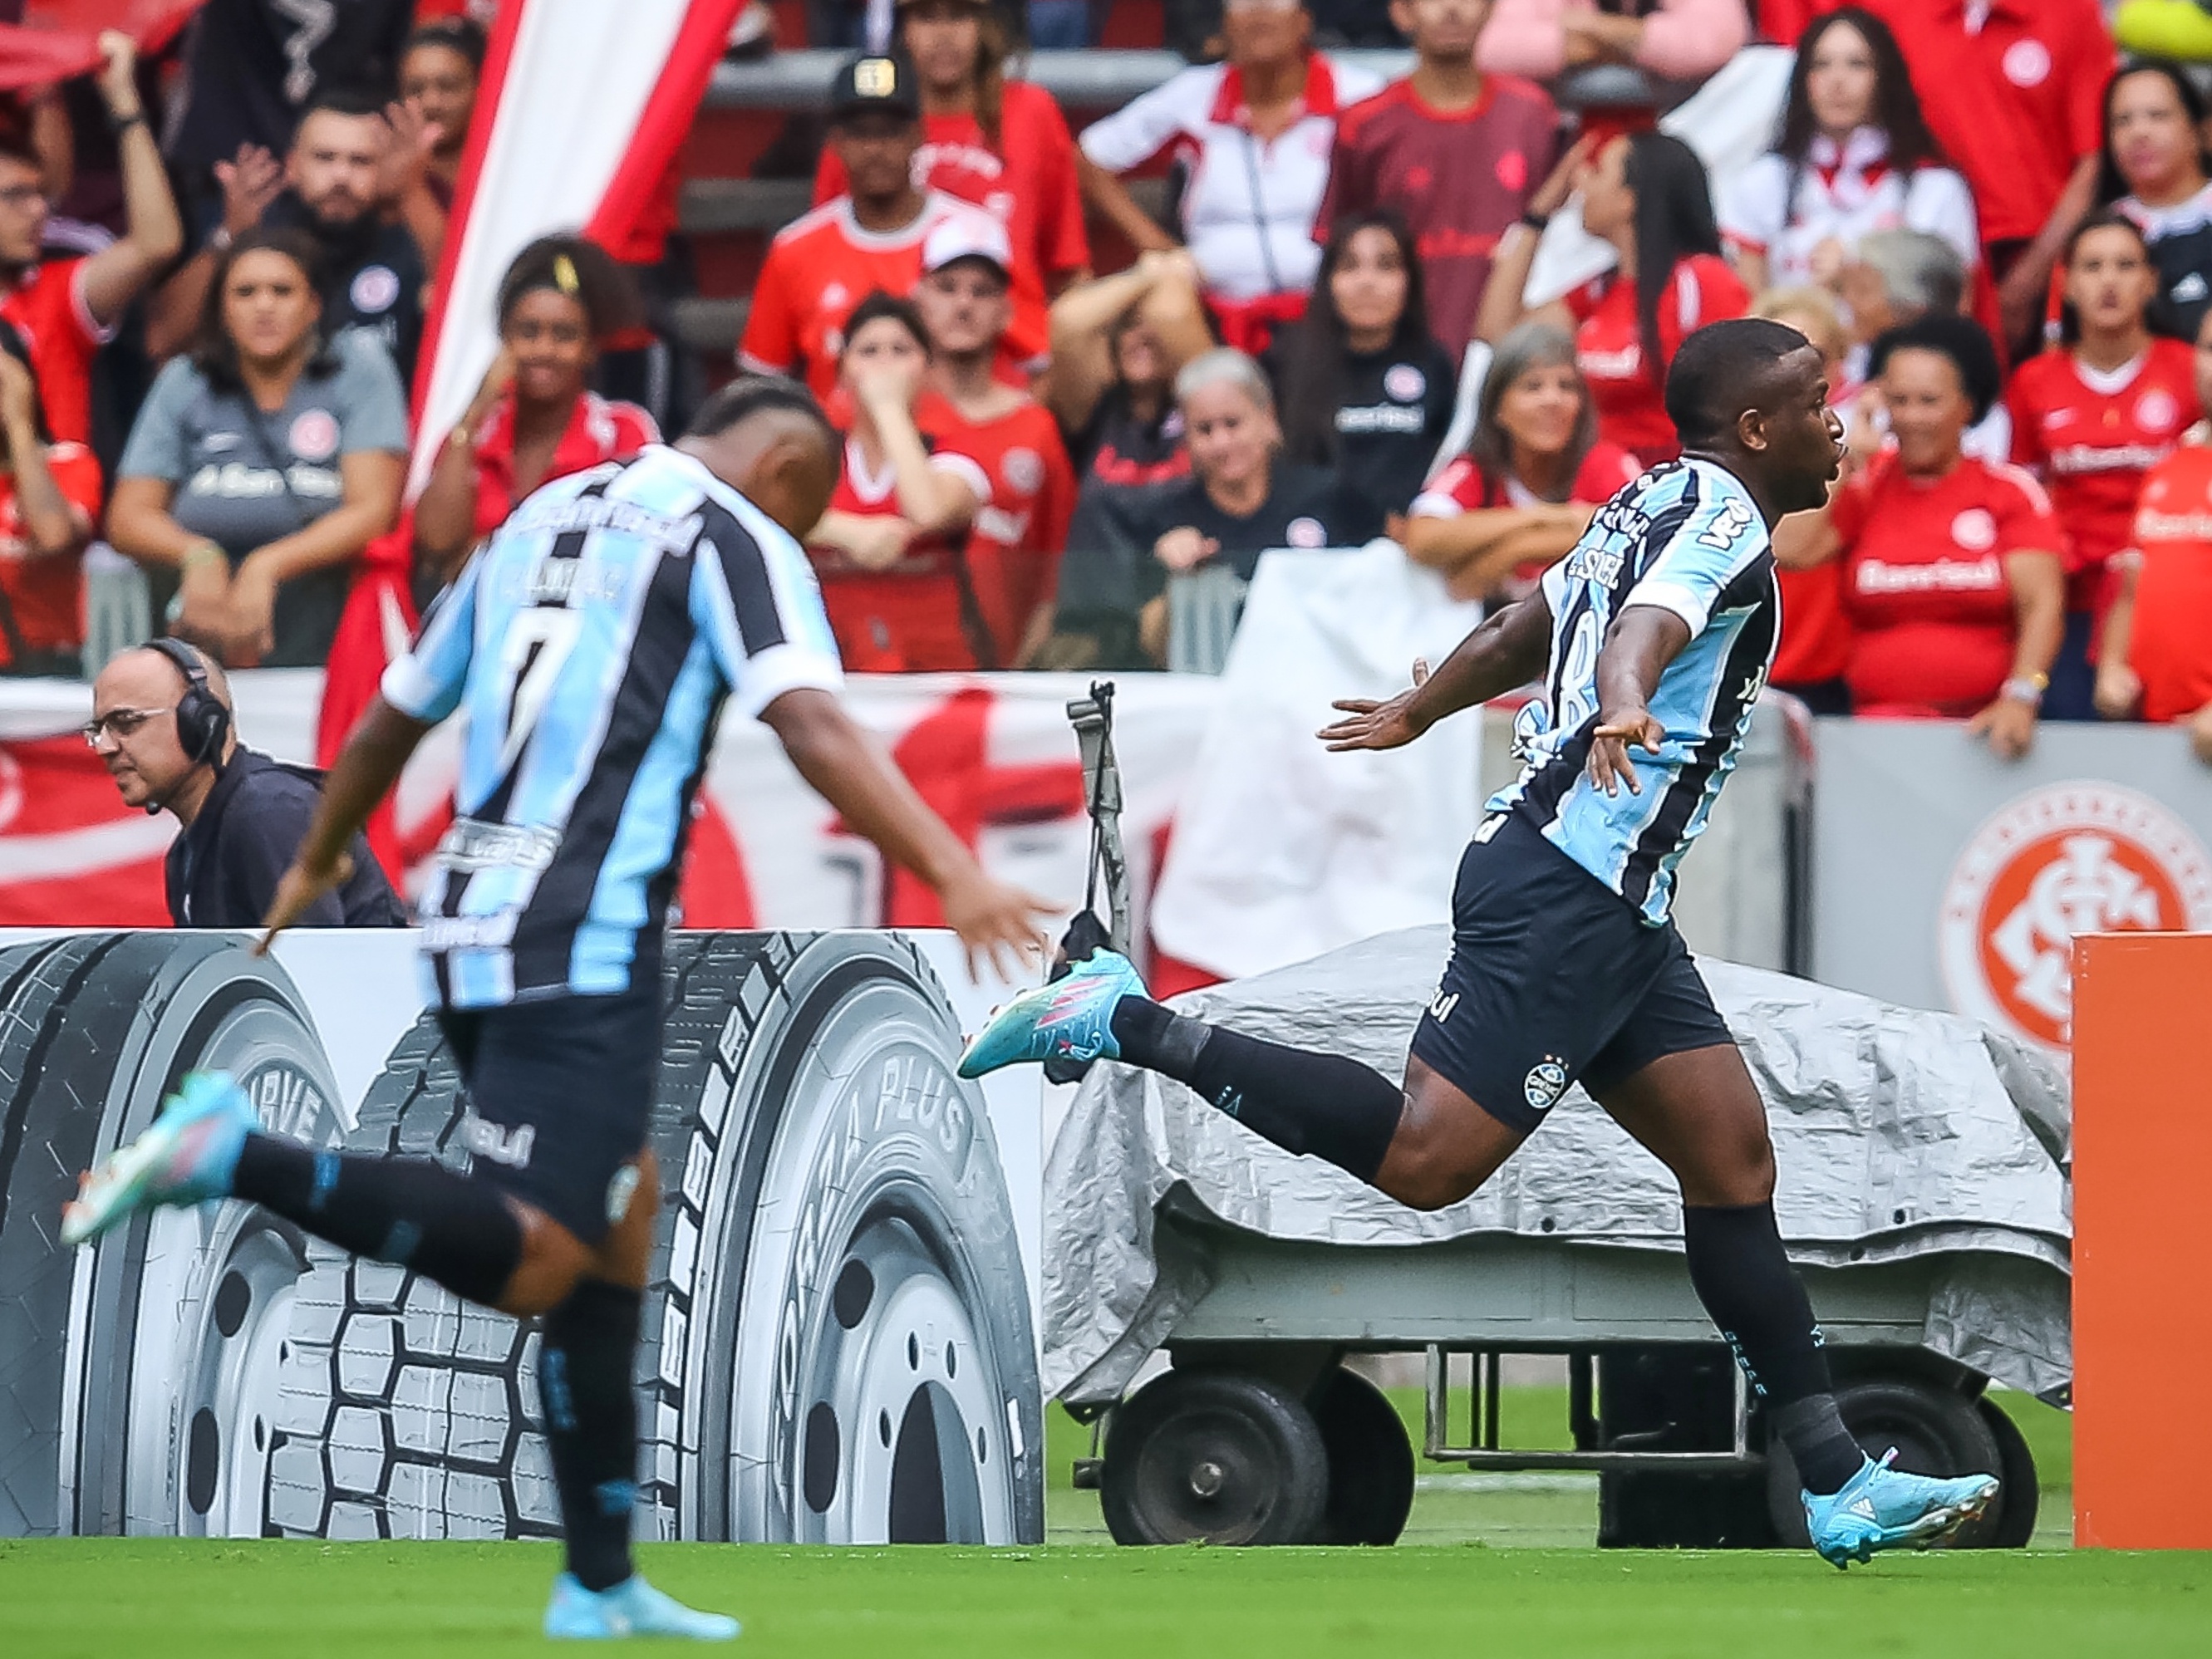 Promessa da base garante vitória do Grêmio em jogo-treino